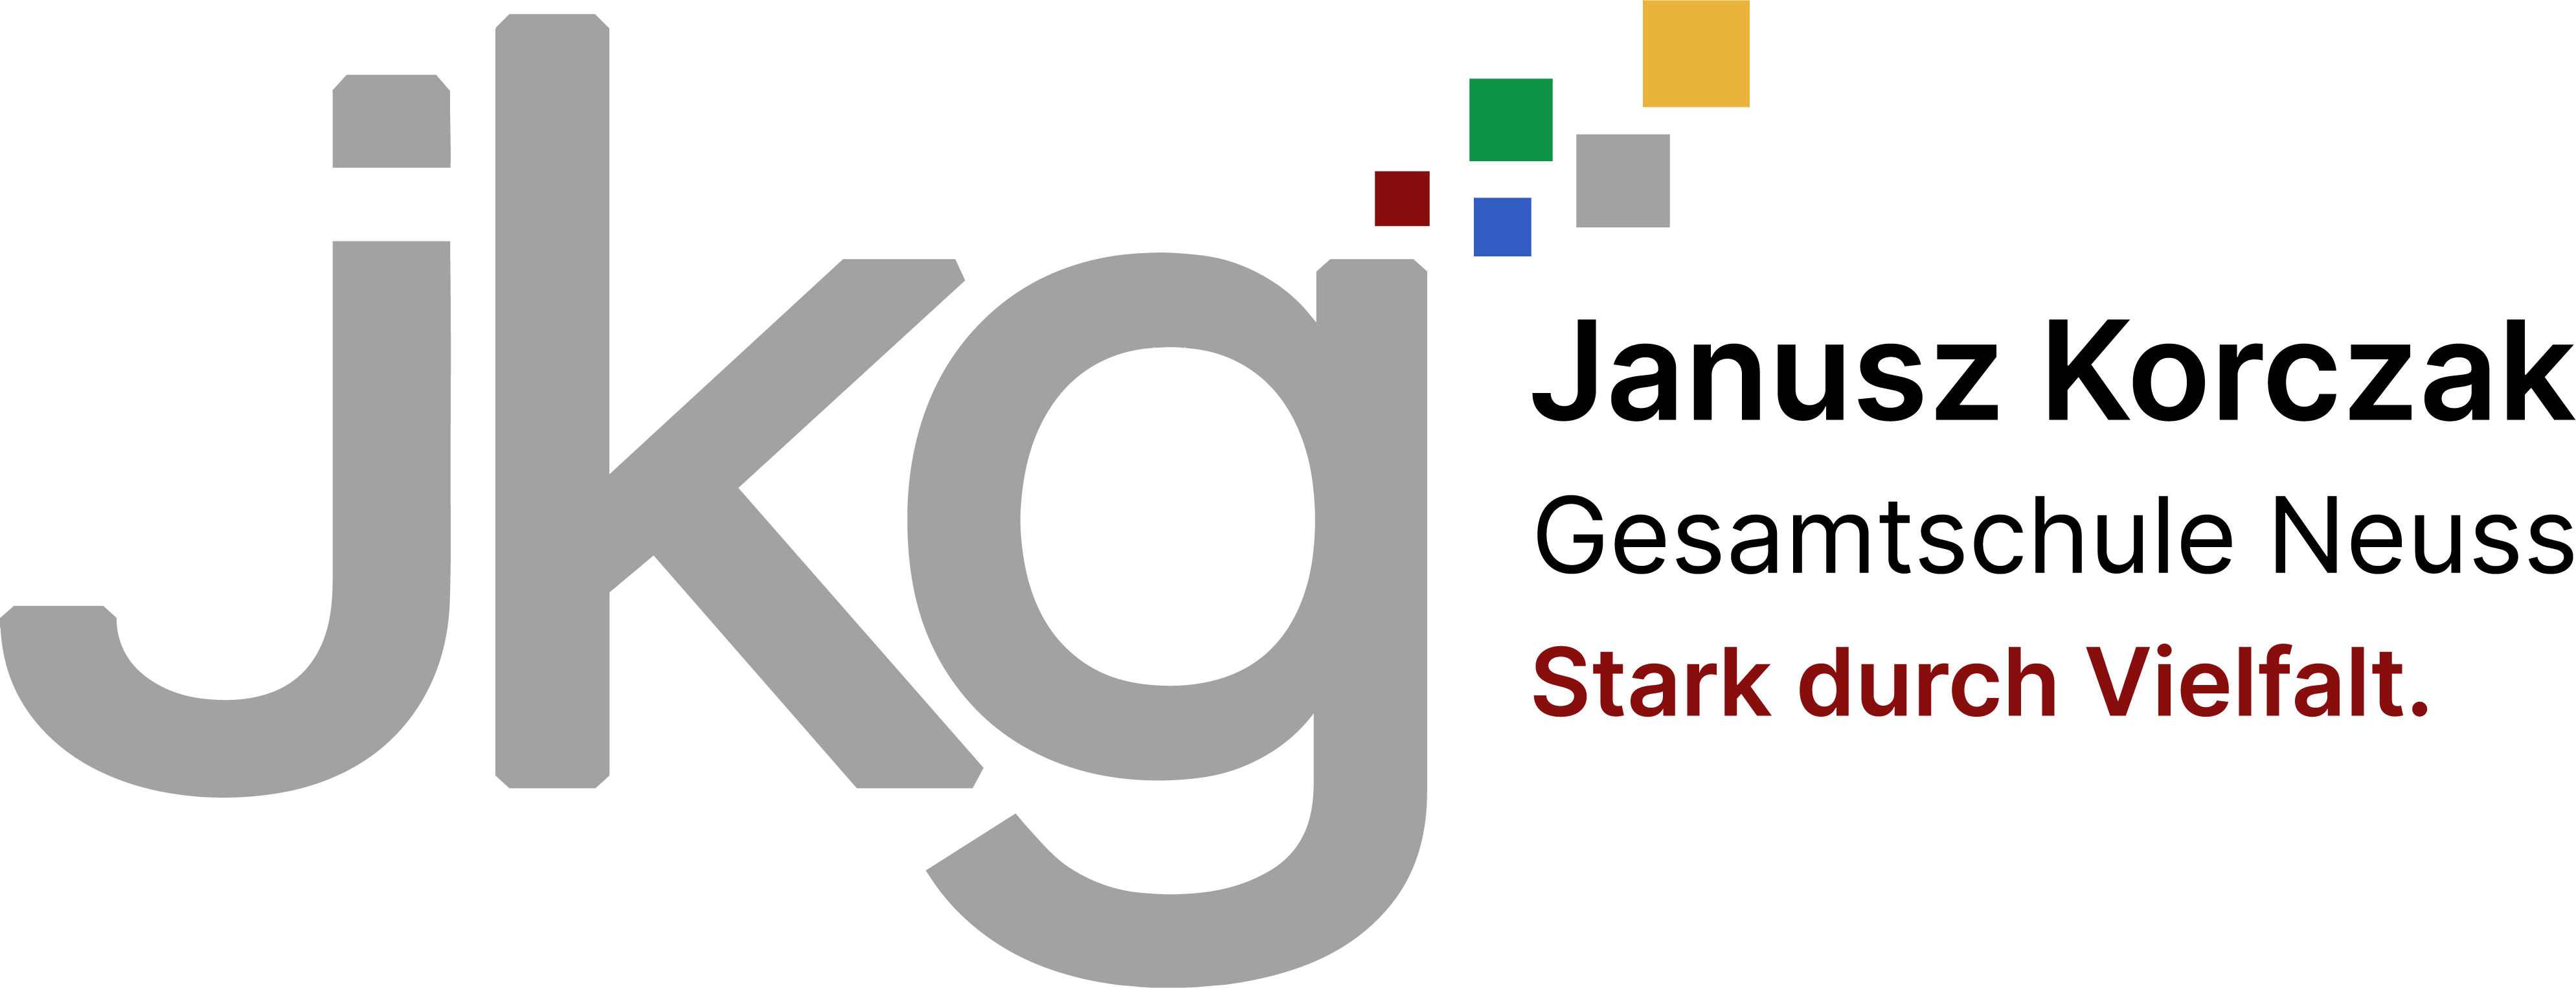 Janusz-Korczak-Gesamtschule Neuss Logo